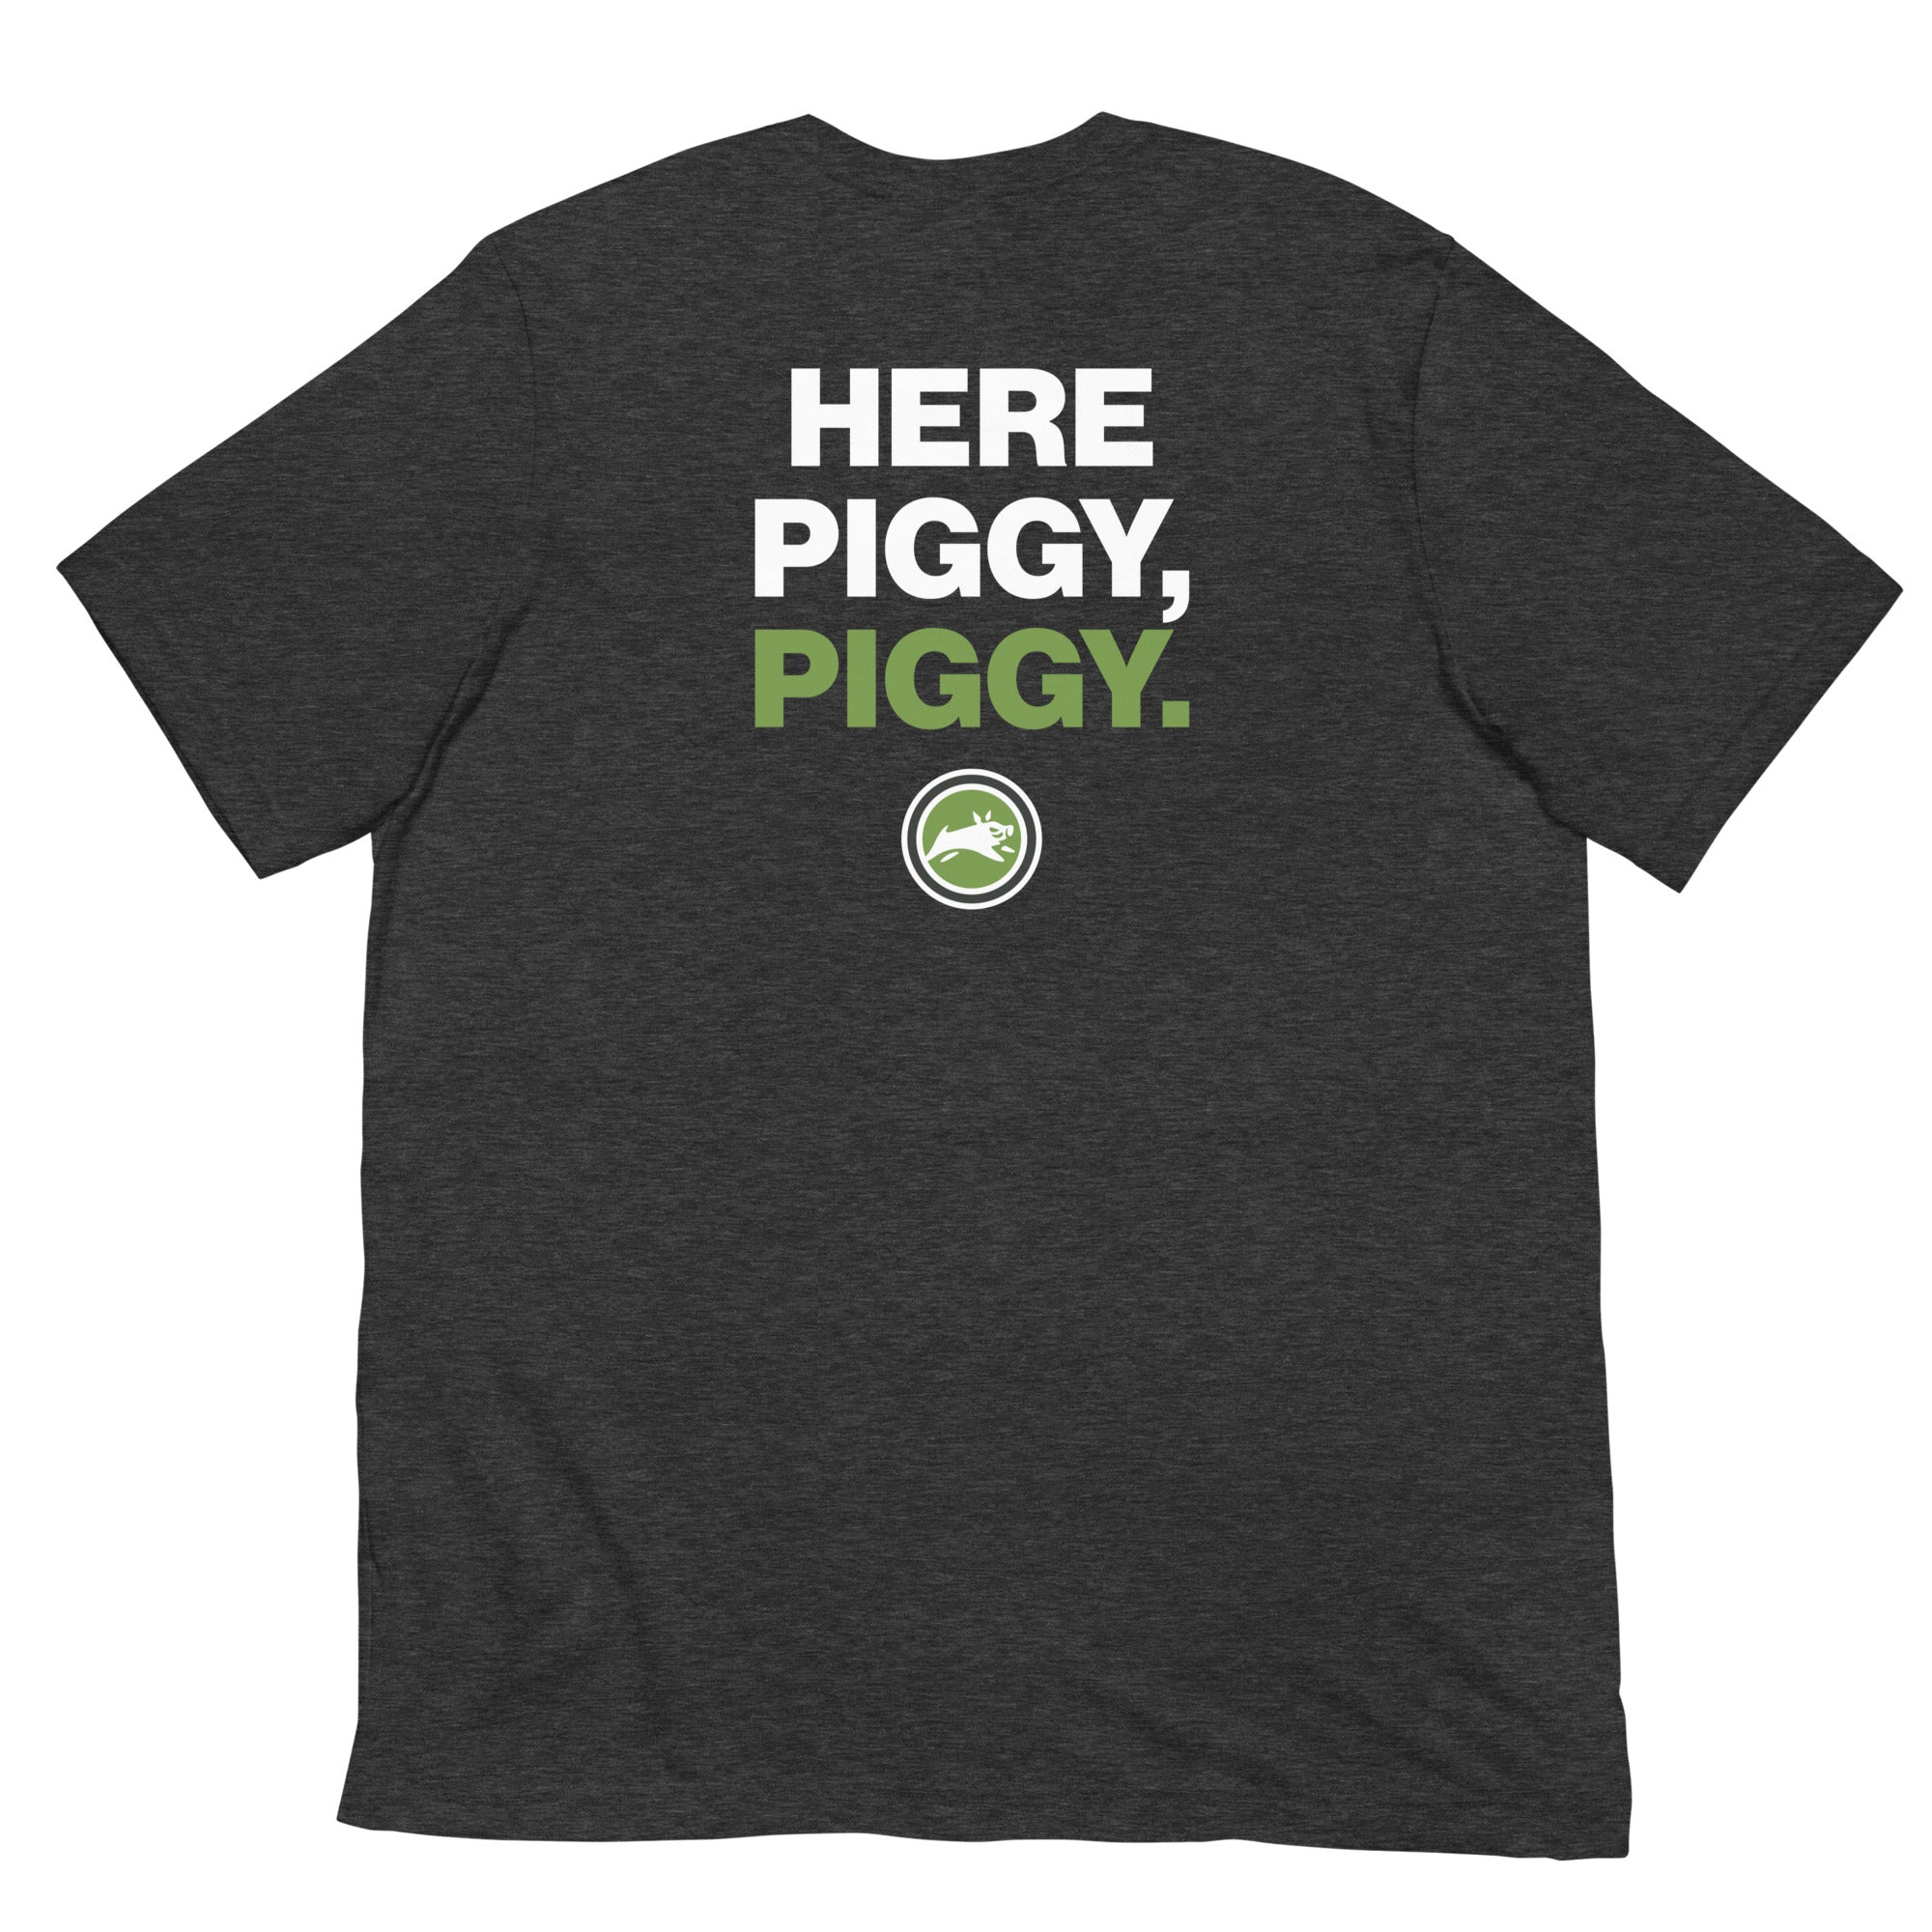 Here Piggy, Piggy. - Short-Sleeve Unisex T-Shirt